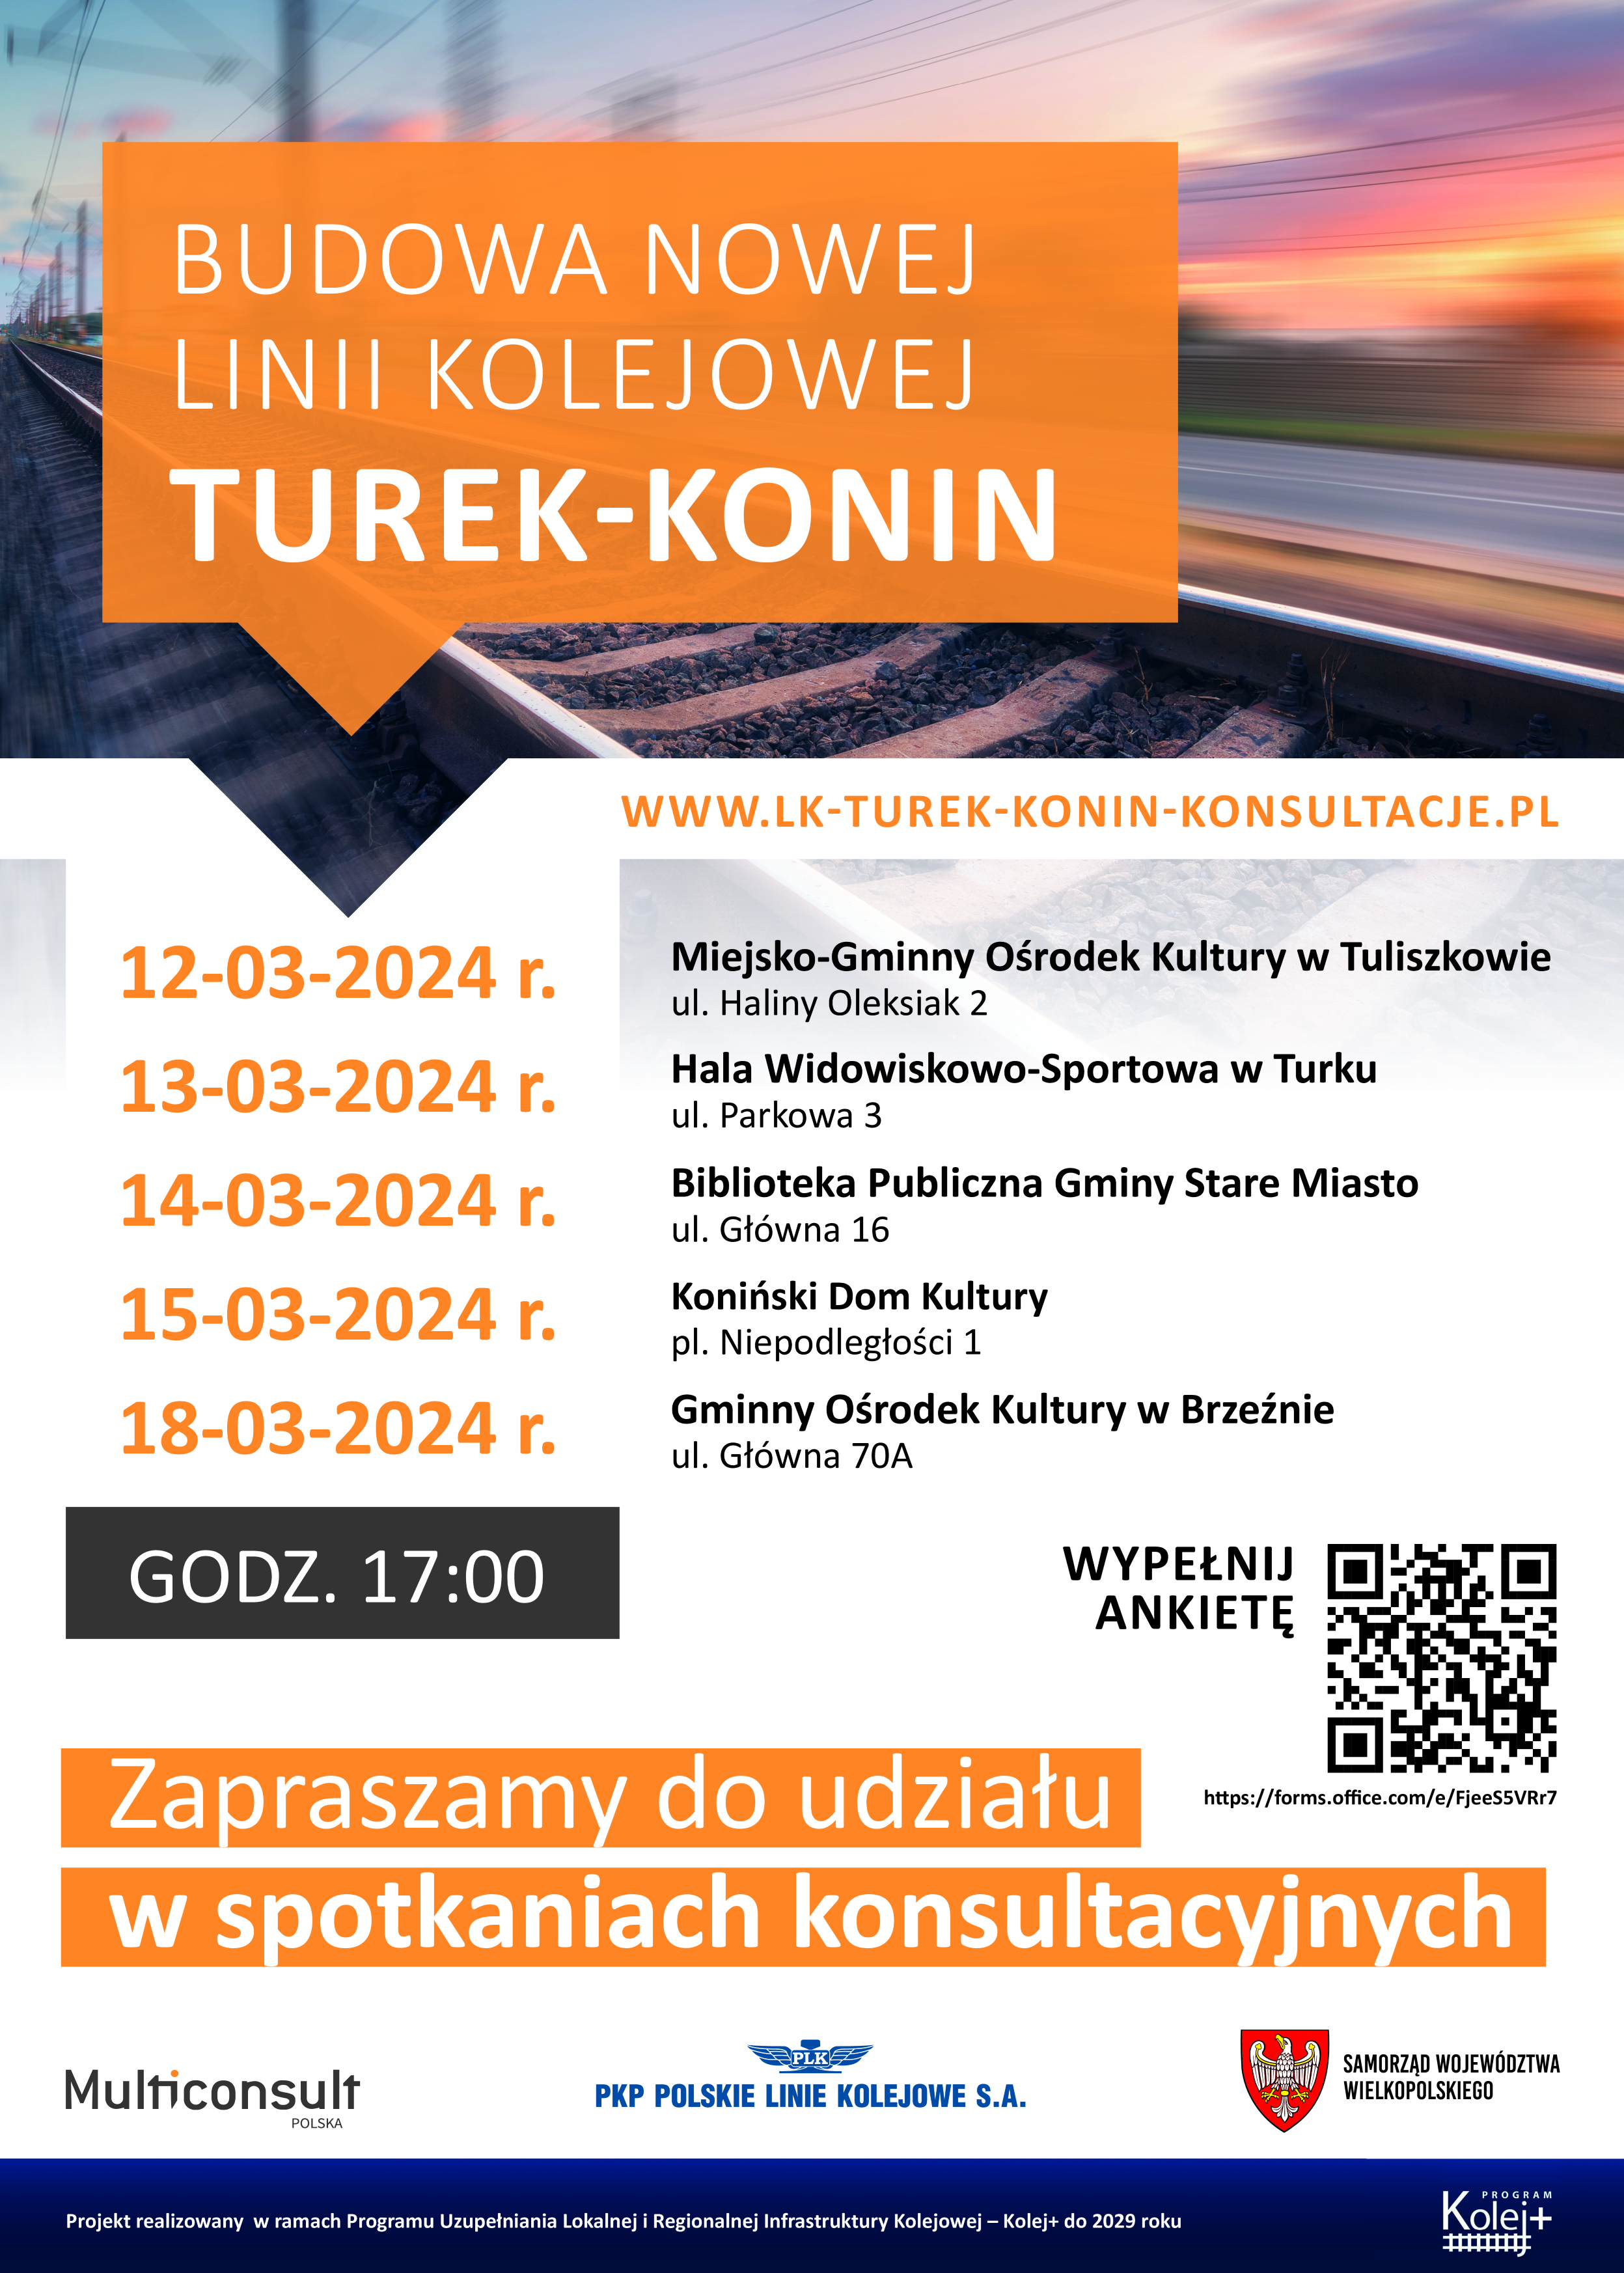 Porozmawiajmy o projekcie nowej linii kolejowej Turek-Konin